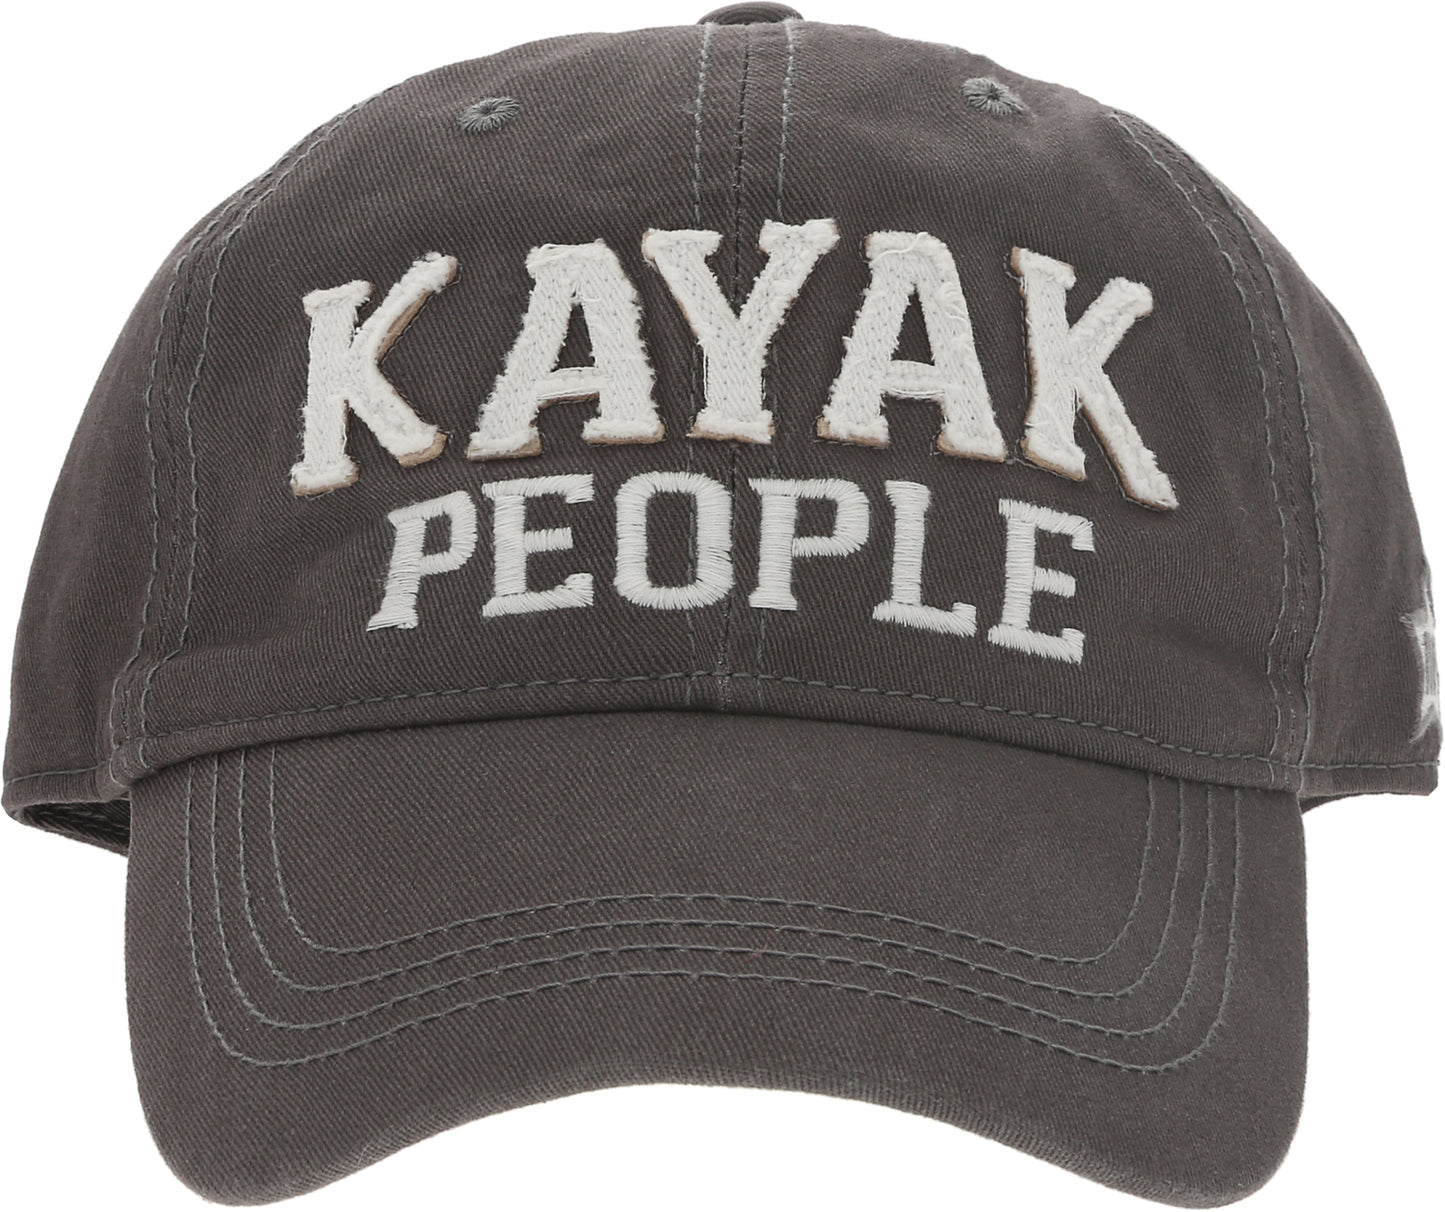 Load image into Gallery viewer, Kayak People - Dark Gray Adjustable Hat
